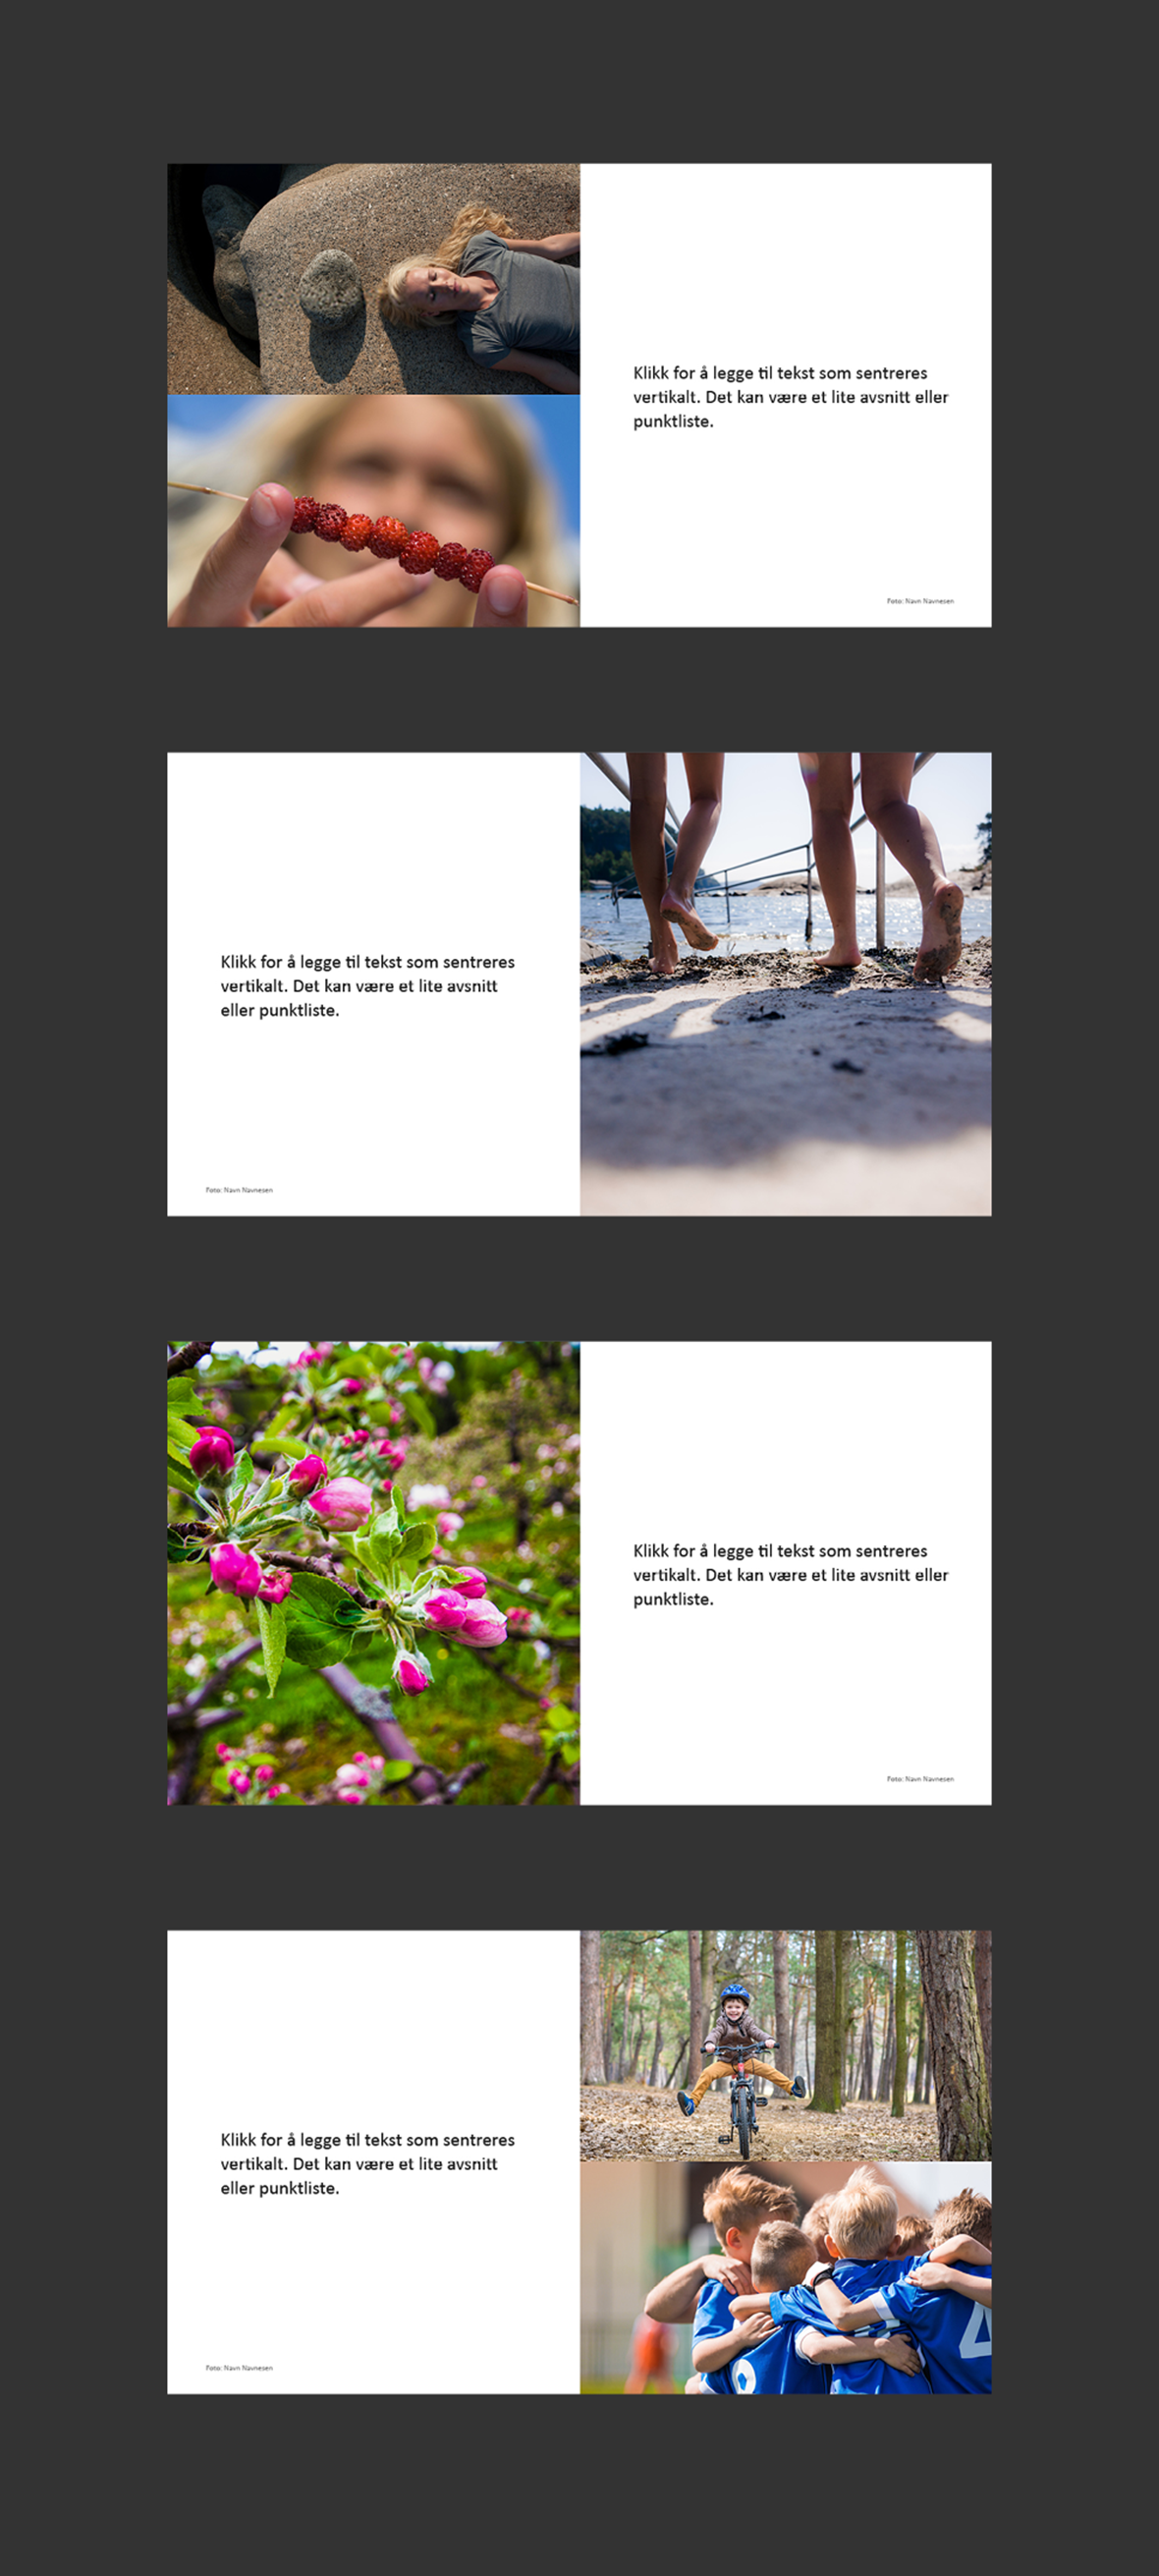 Eksempler på sideoppsett i PowerPoint